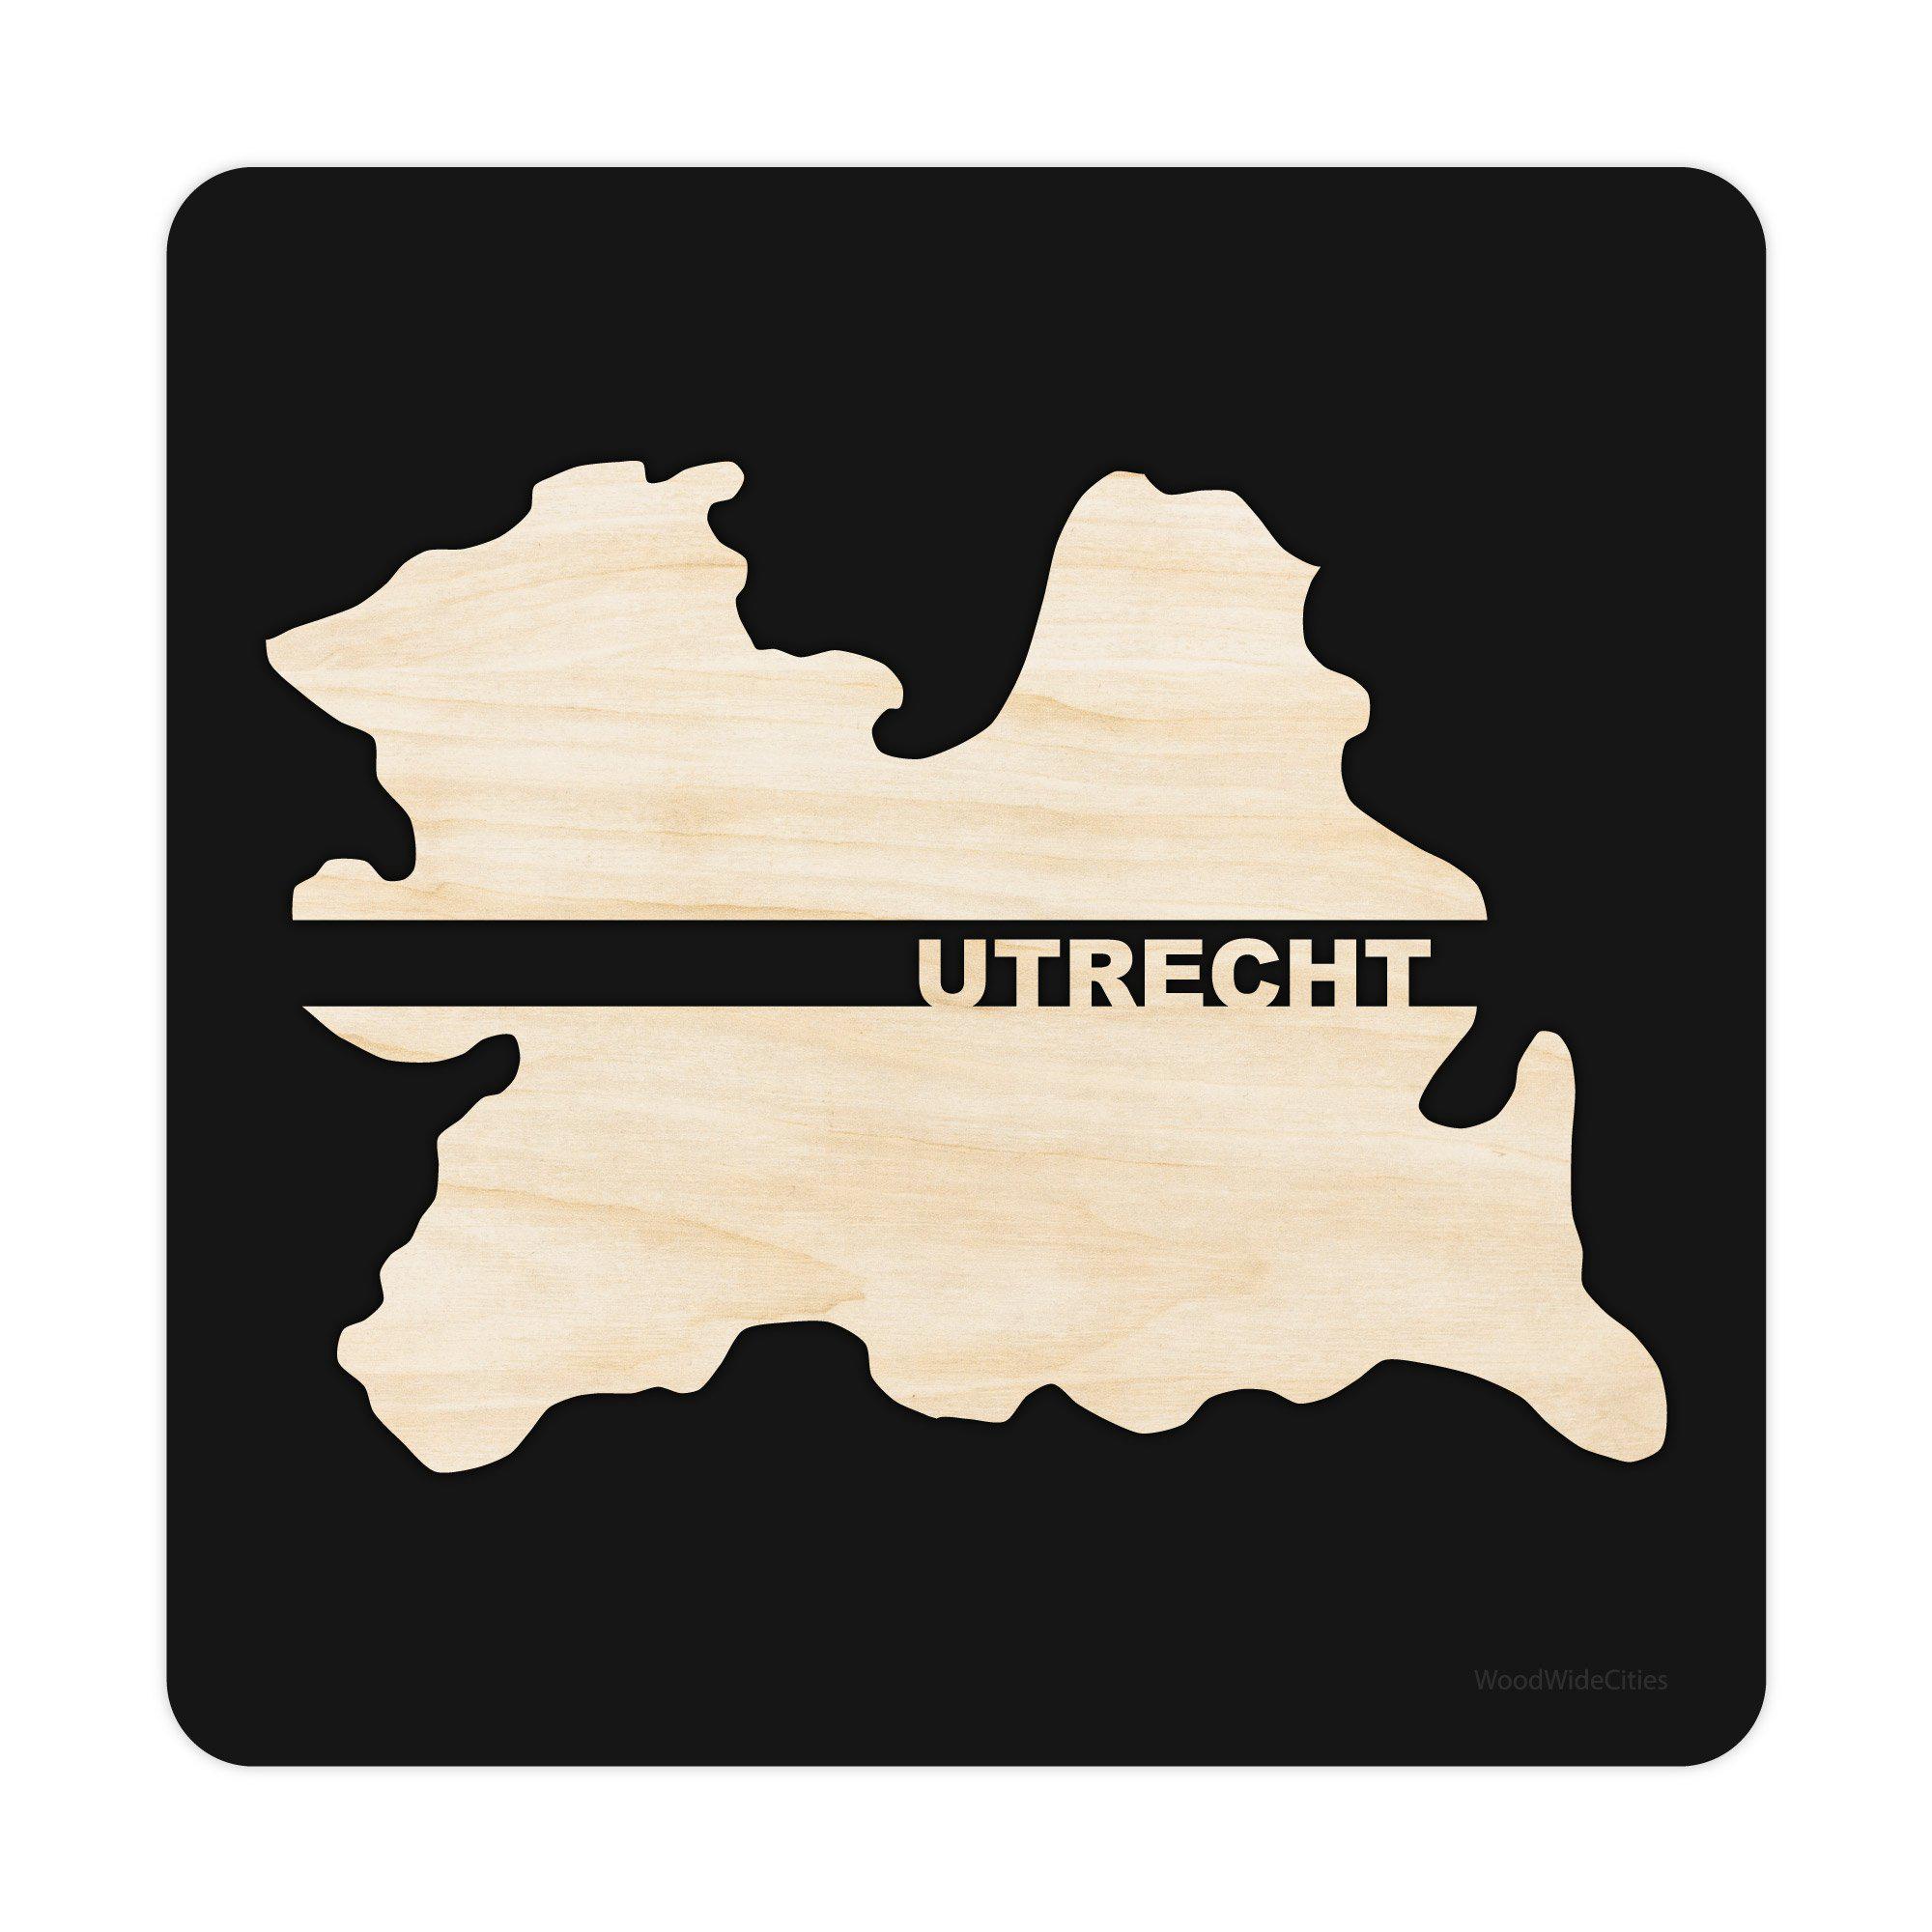 Provincie Utrecht Black S (25x25 cm) houten cadeau decoratie relatiegeschenk van WoodWideCities